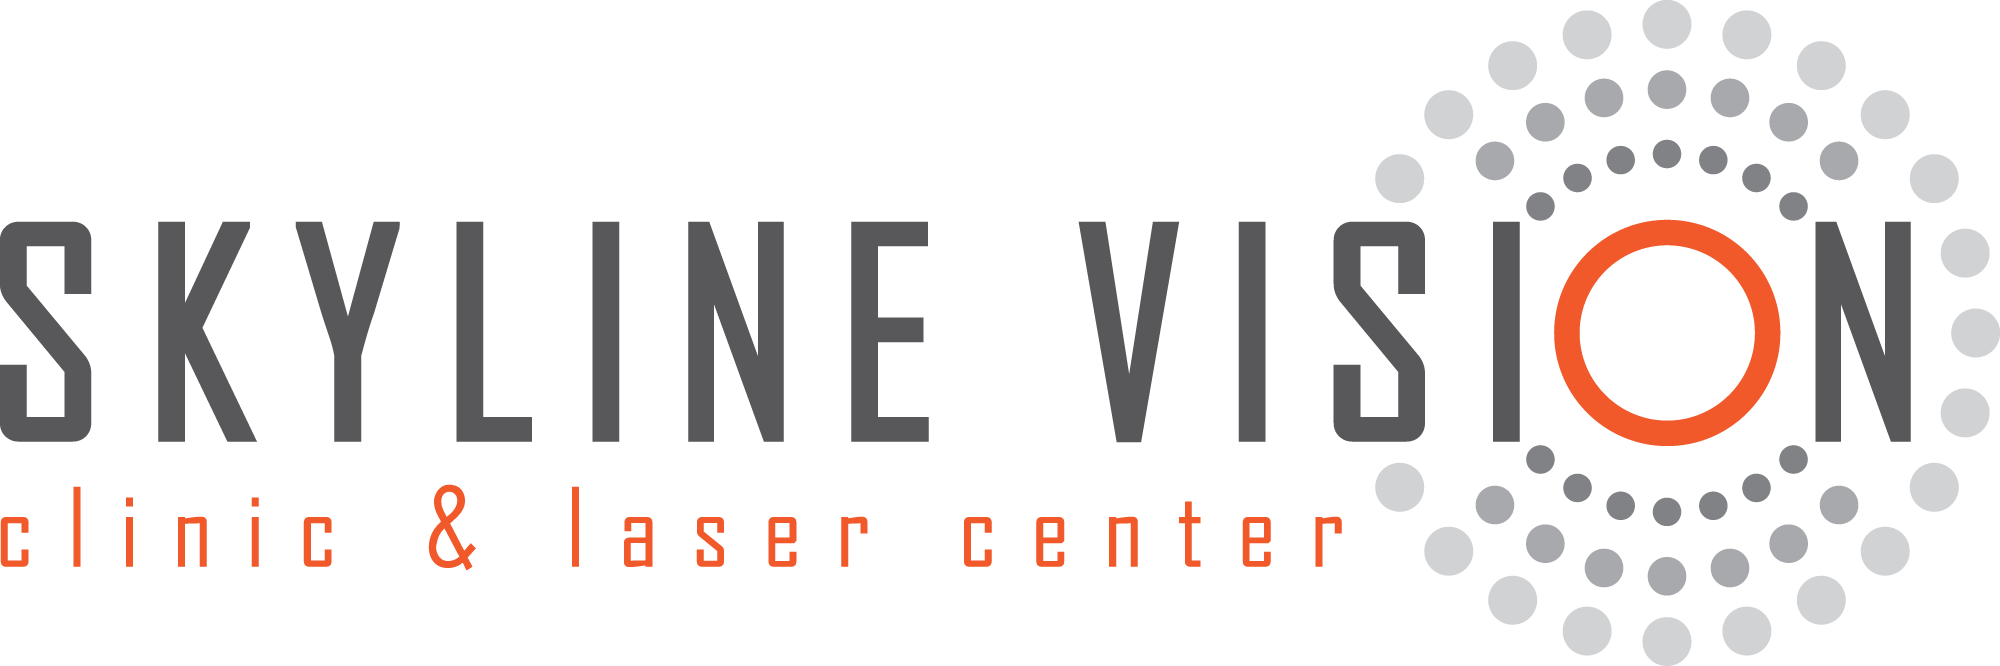 Skyline Vision Clinic thumbnail